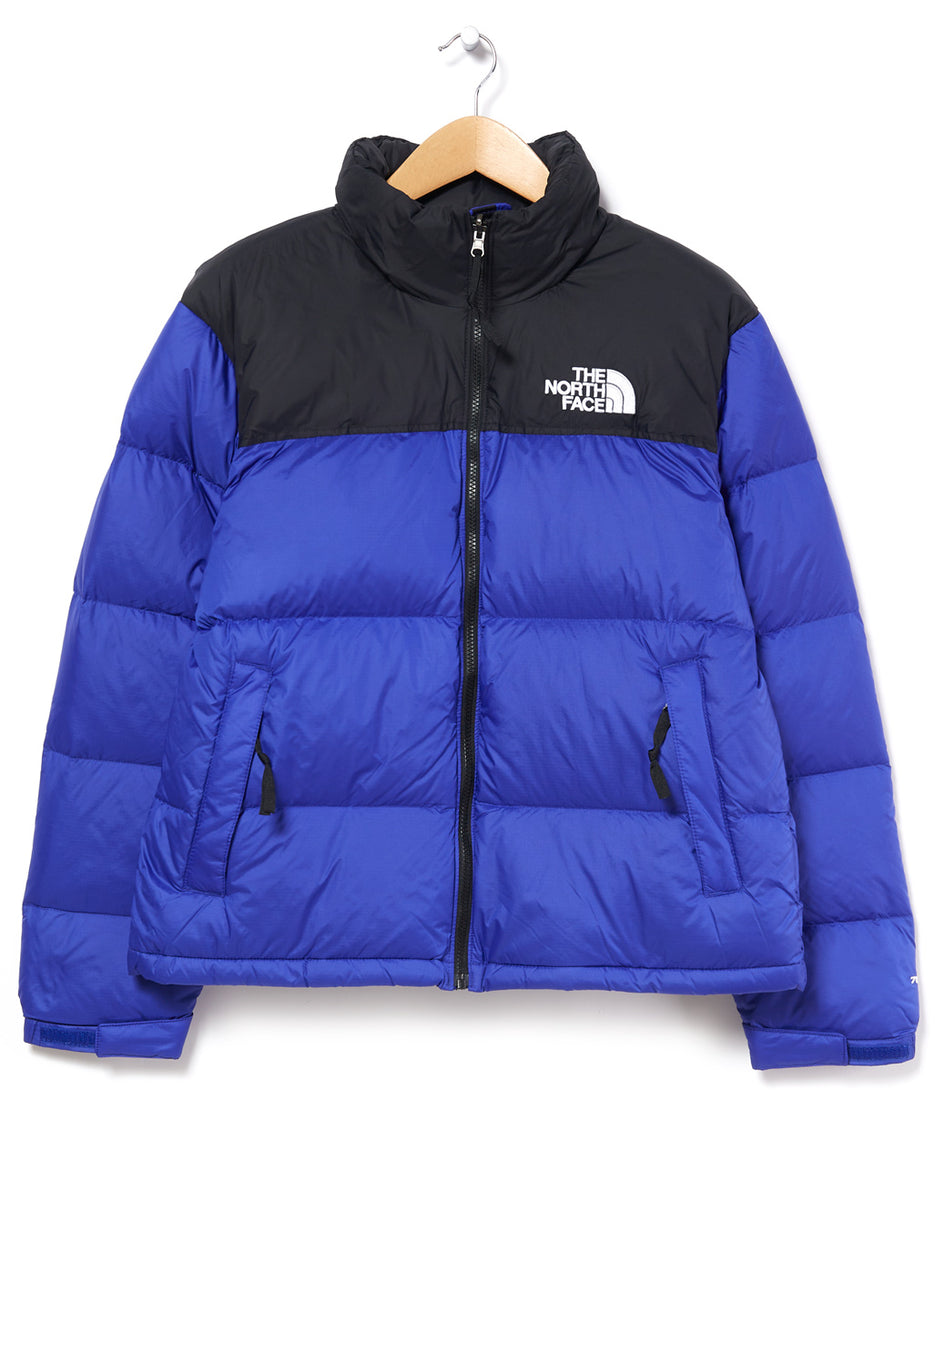 The North Face 1996 Retro Nuptse Men's Jacket 112